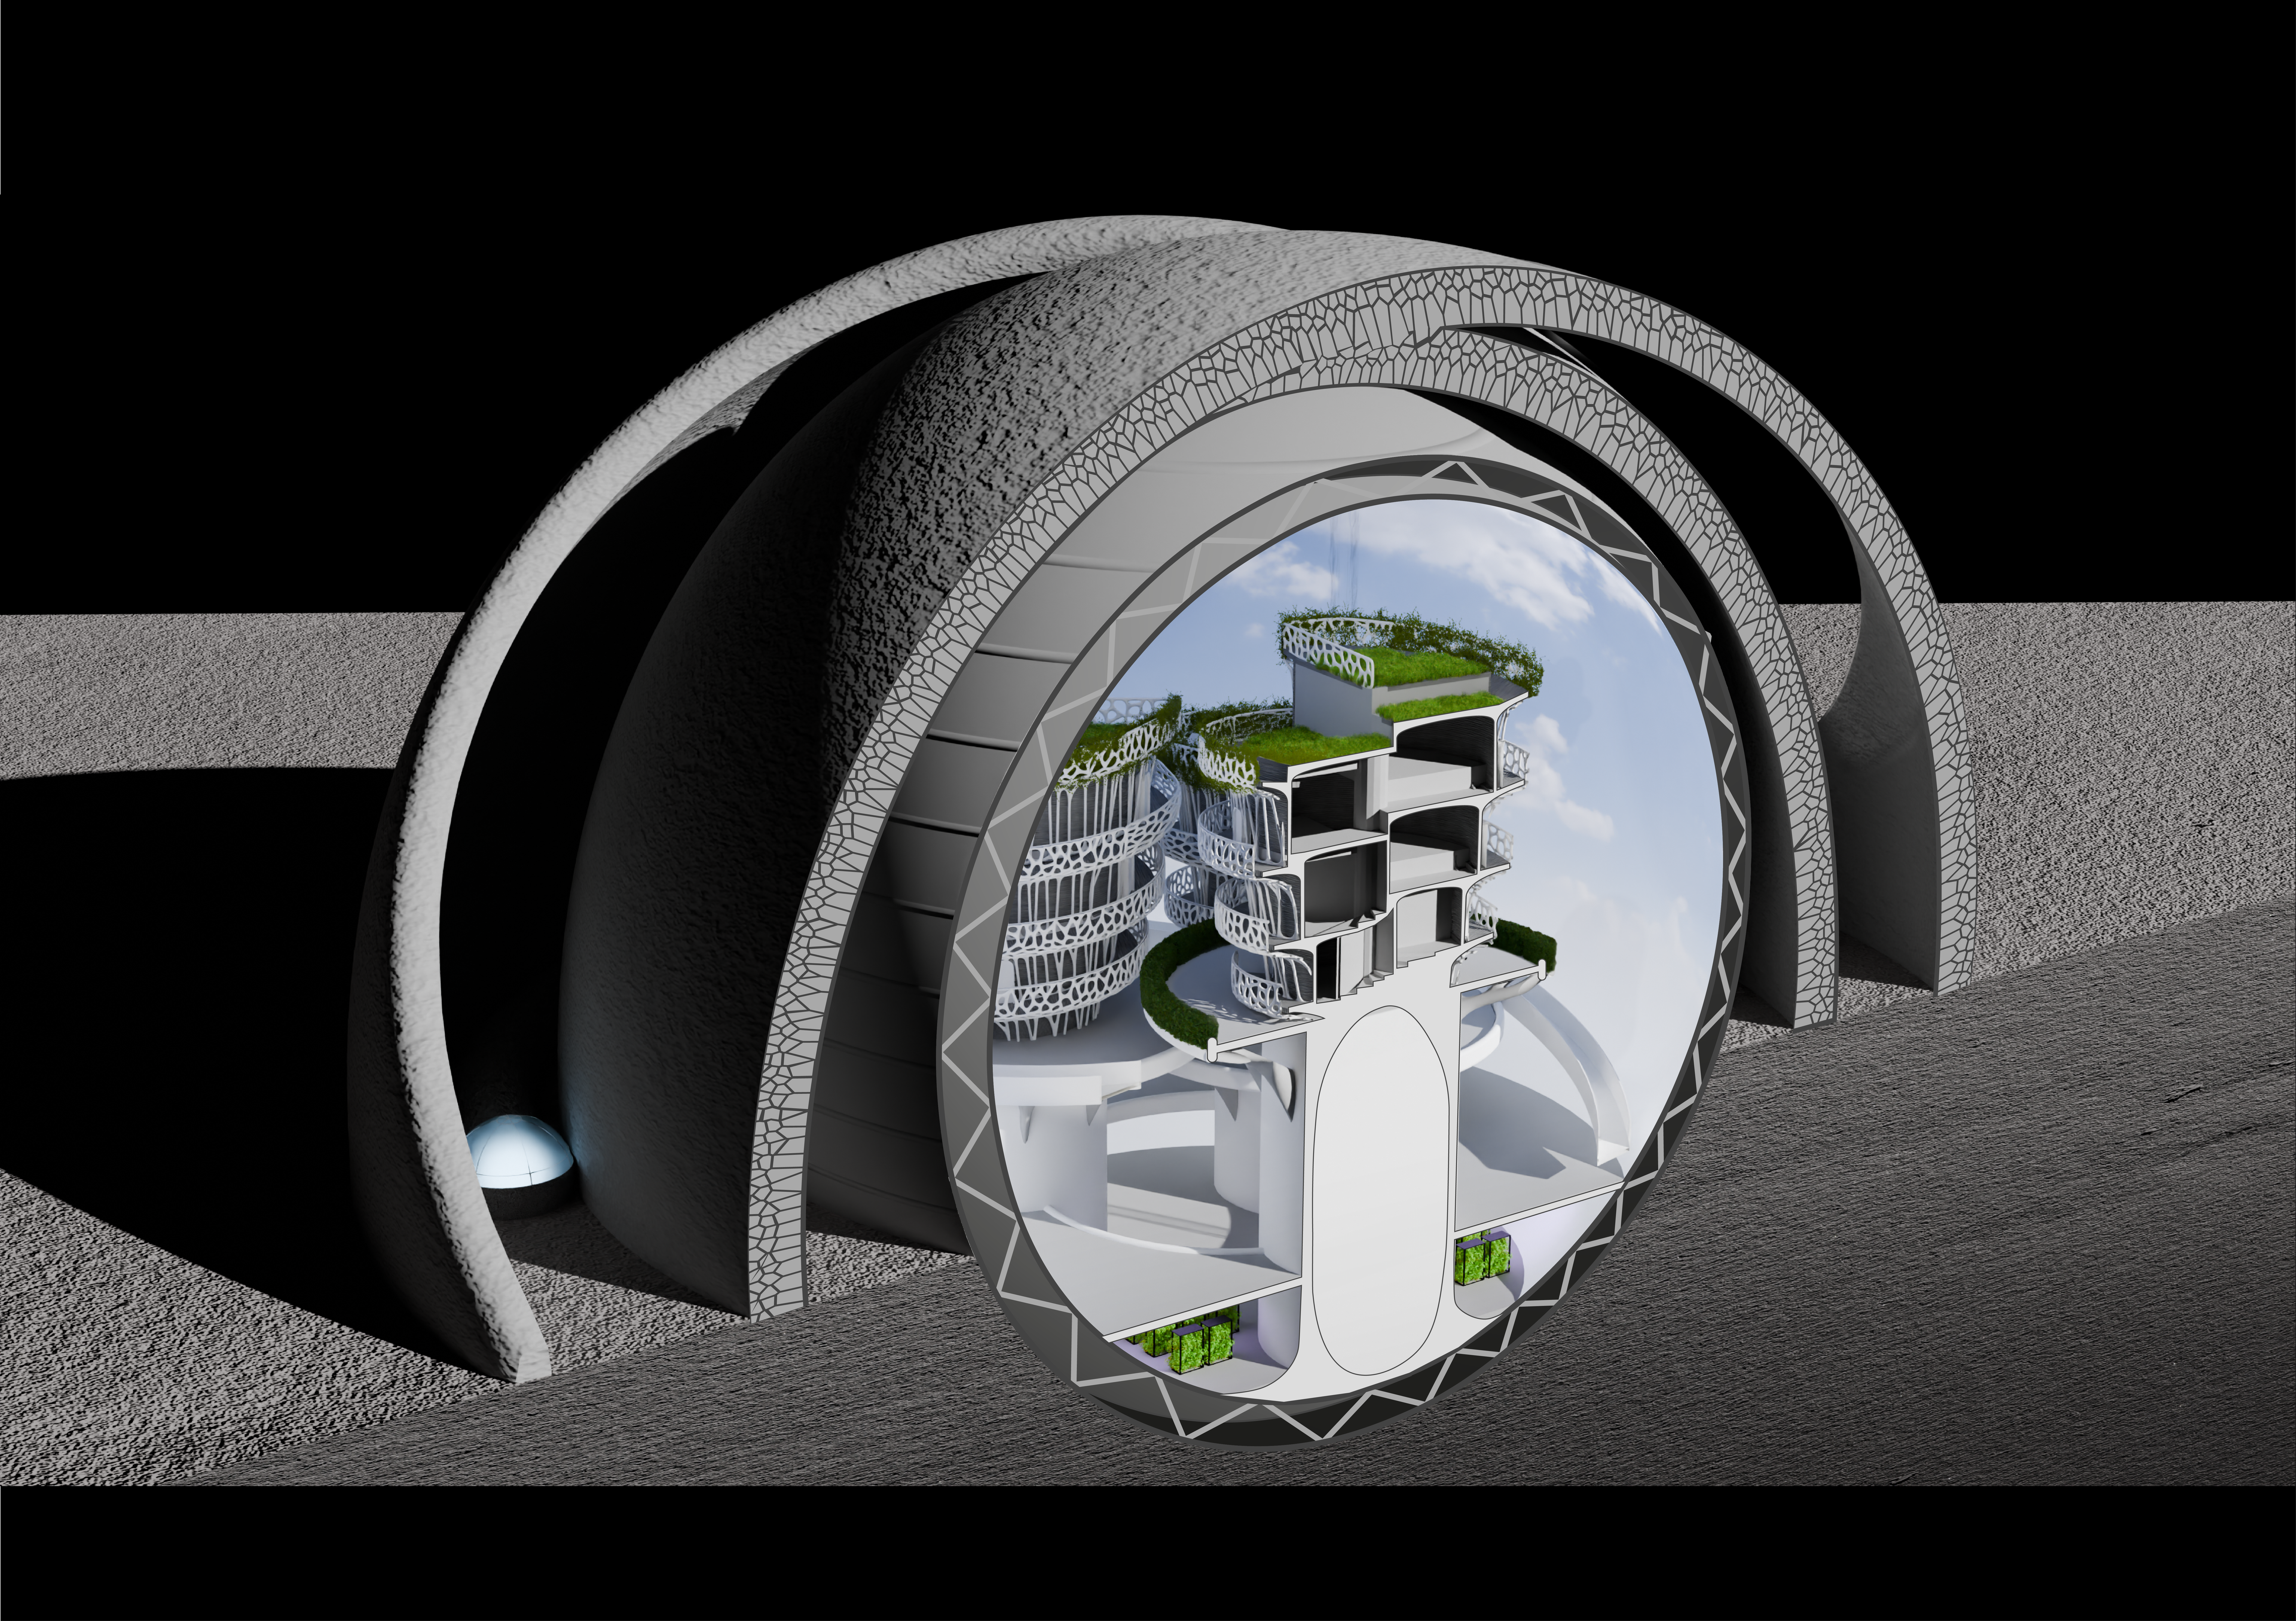 Studenten van de TU Delft hebben een ontwerp gemaakt voor een dorp op de maan, waarin ruim 150 inwoners vrij kunnen leven. 